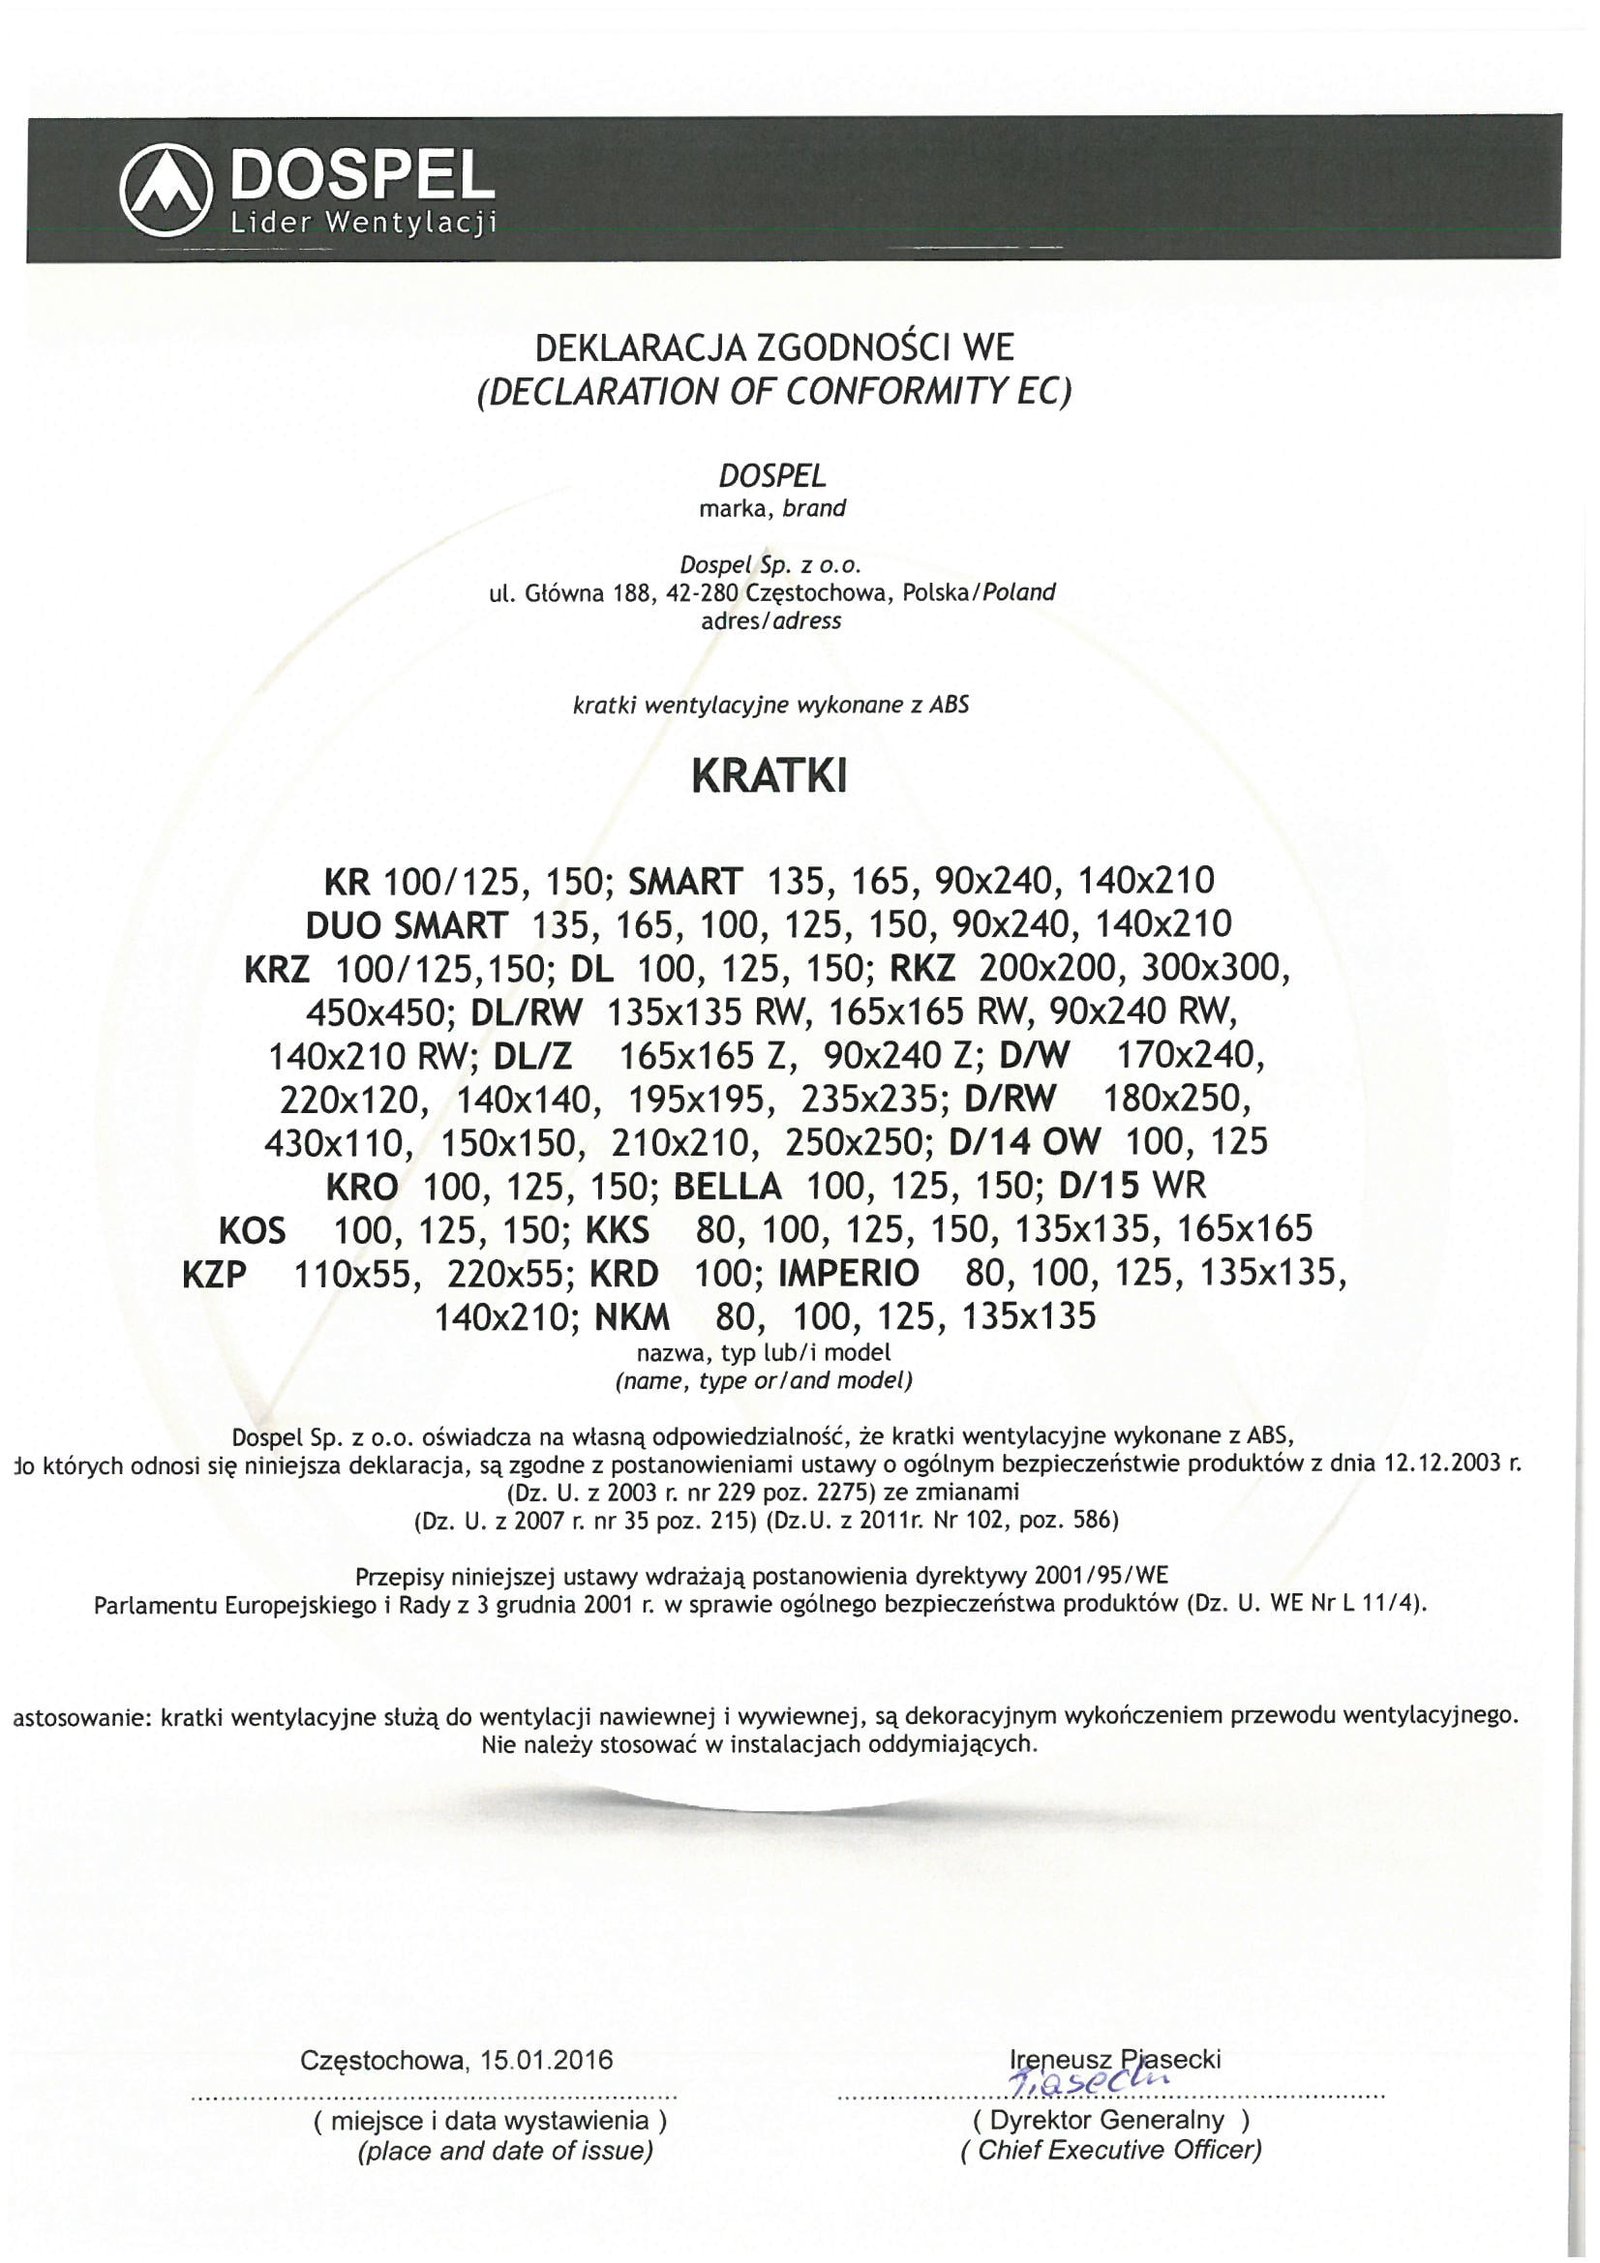 Kratka wentylacyjna certyfikat, deklaracja zgodności, producent wentylatorów, Dospel